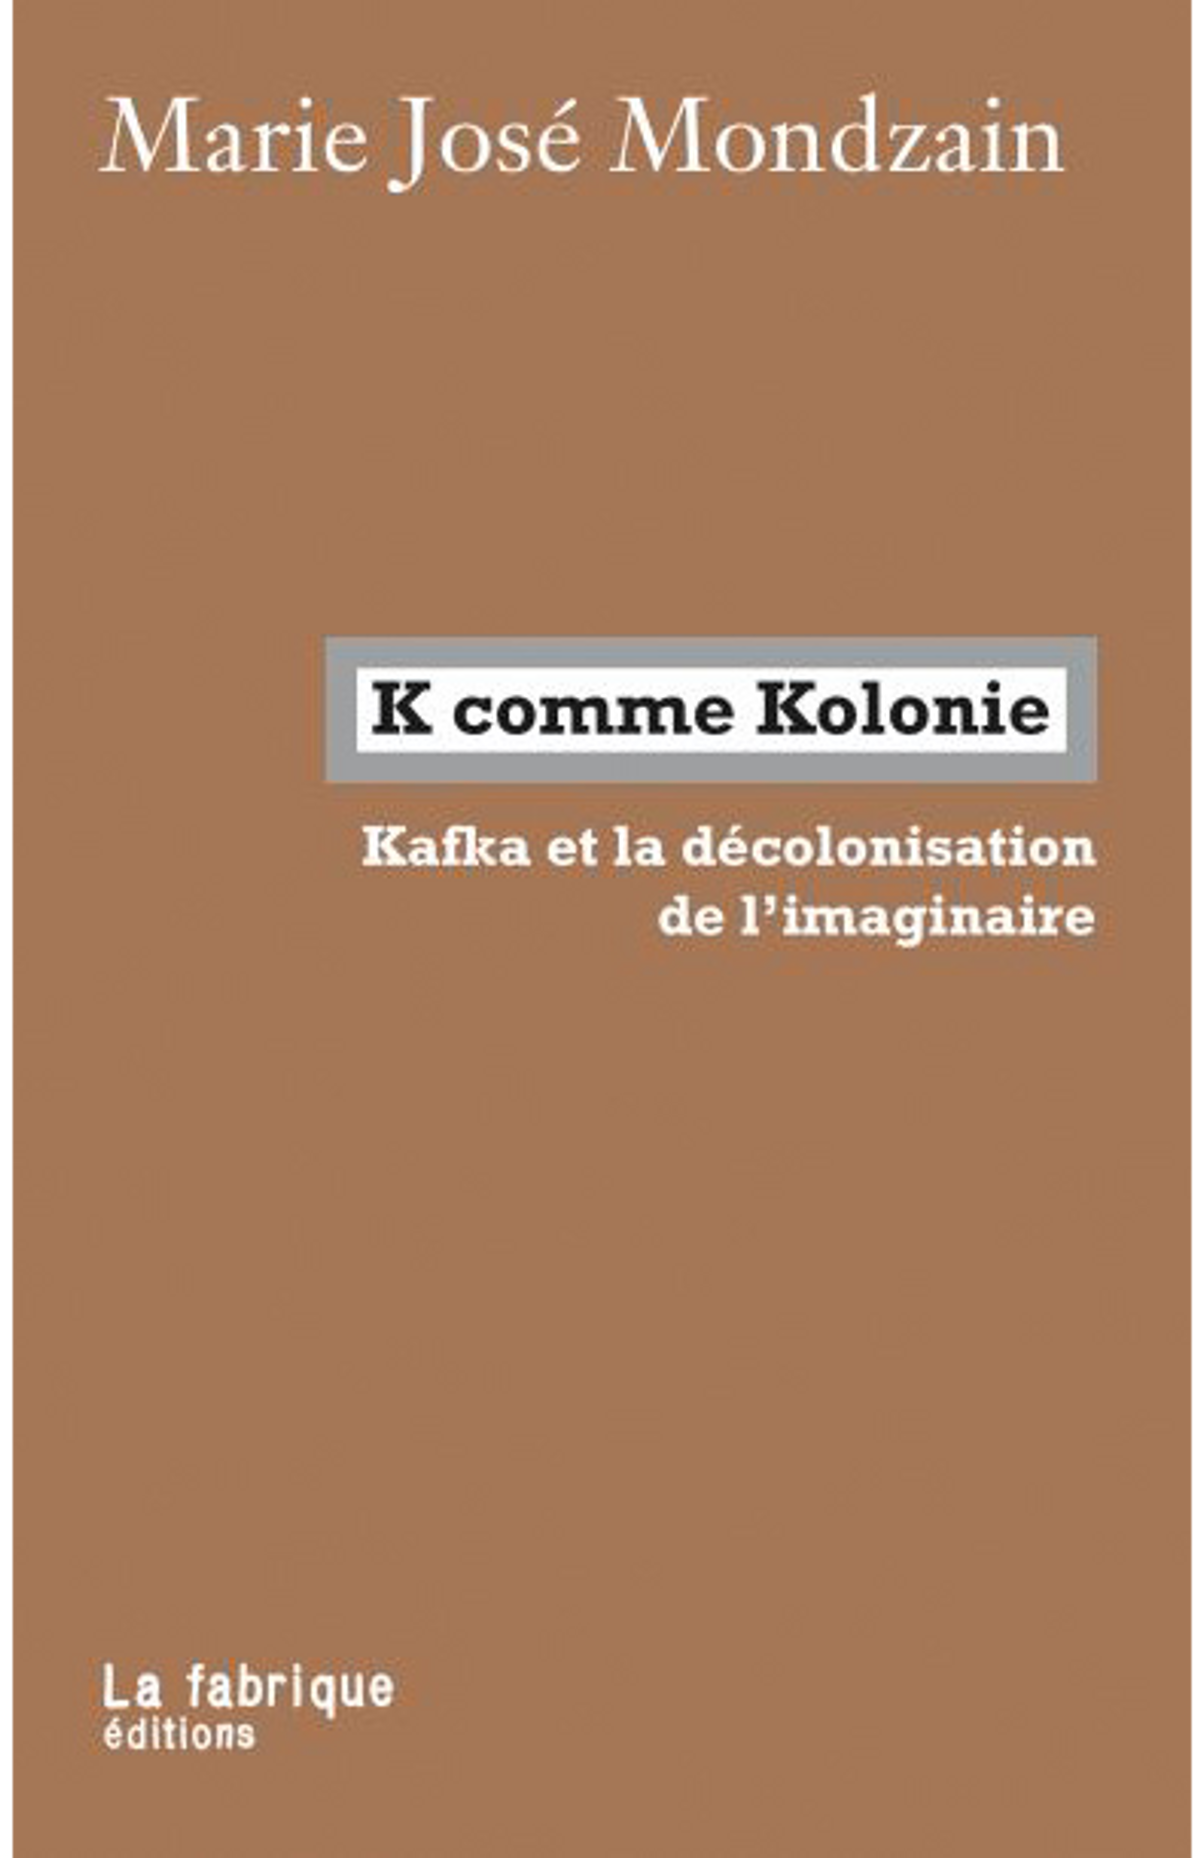 Marie José Mondzain, K comme Kolonie. Kafka et la décolonisation de l’imaginaire, Paris, La fabrique éditions, 2020, 247 pages, 14 euros. 